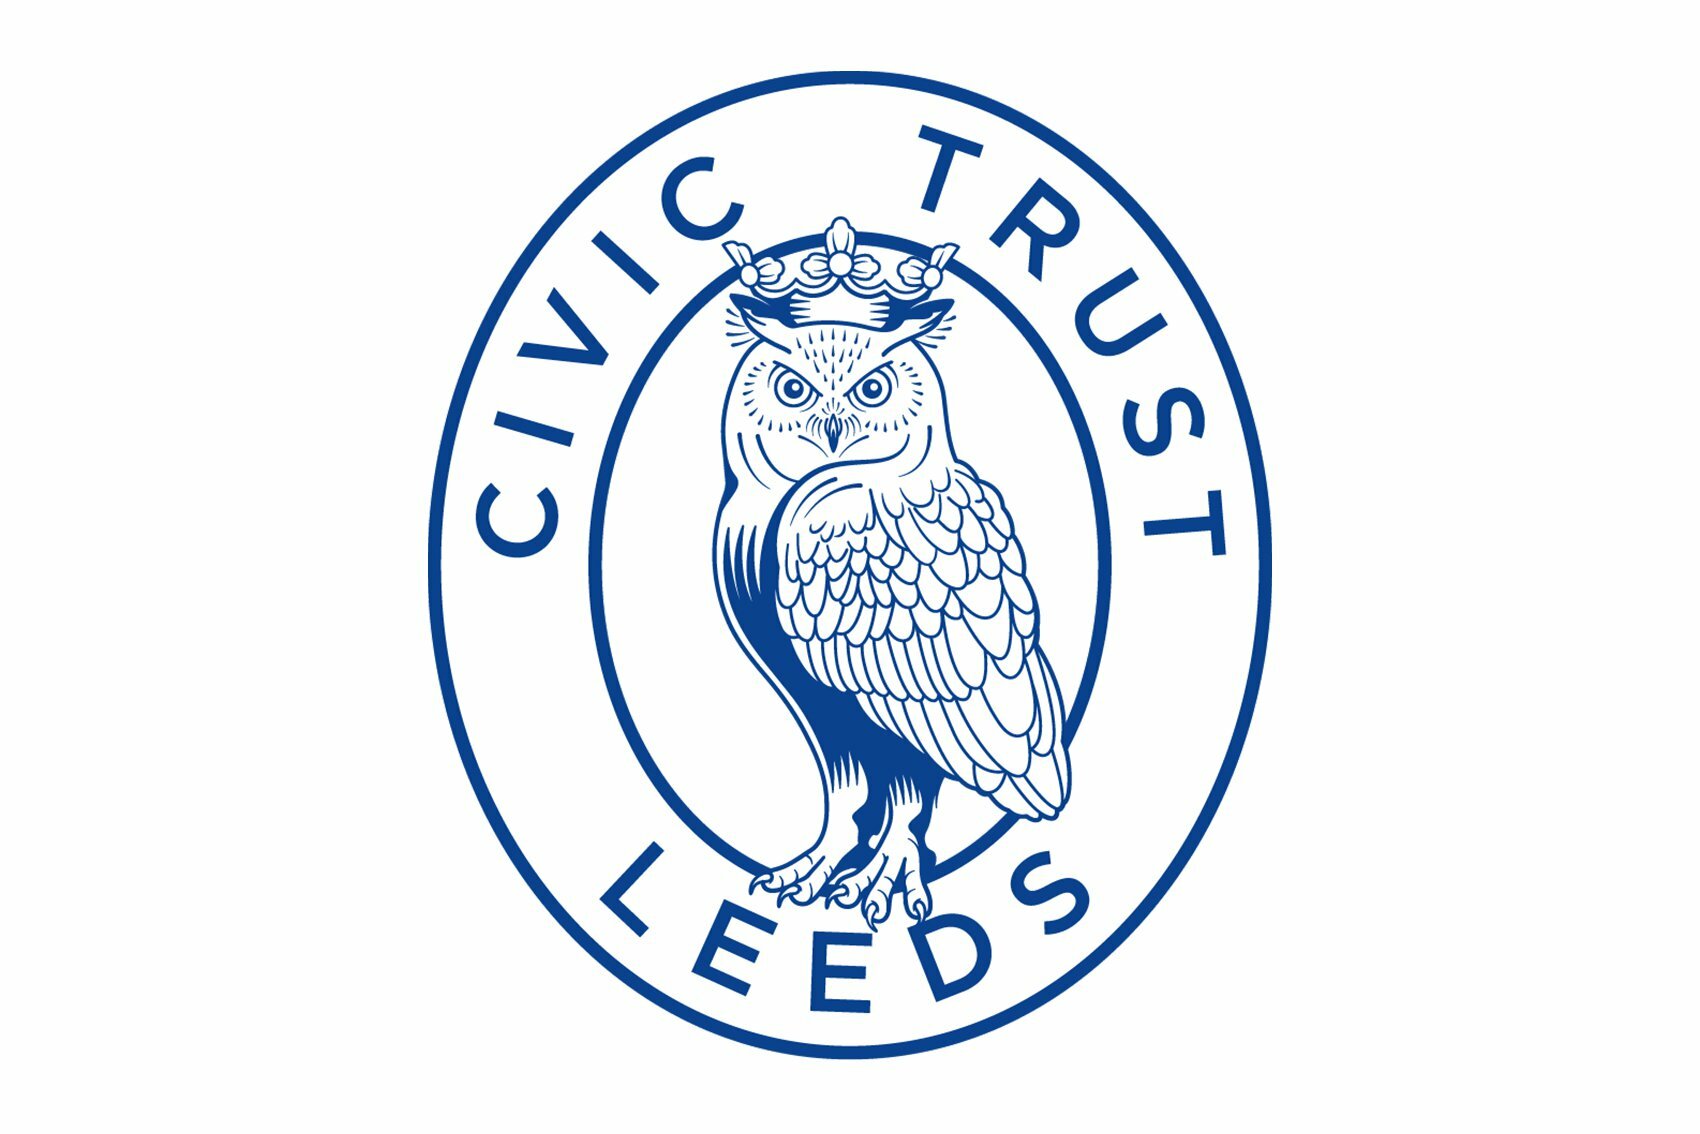 Civic trust leeds original